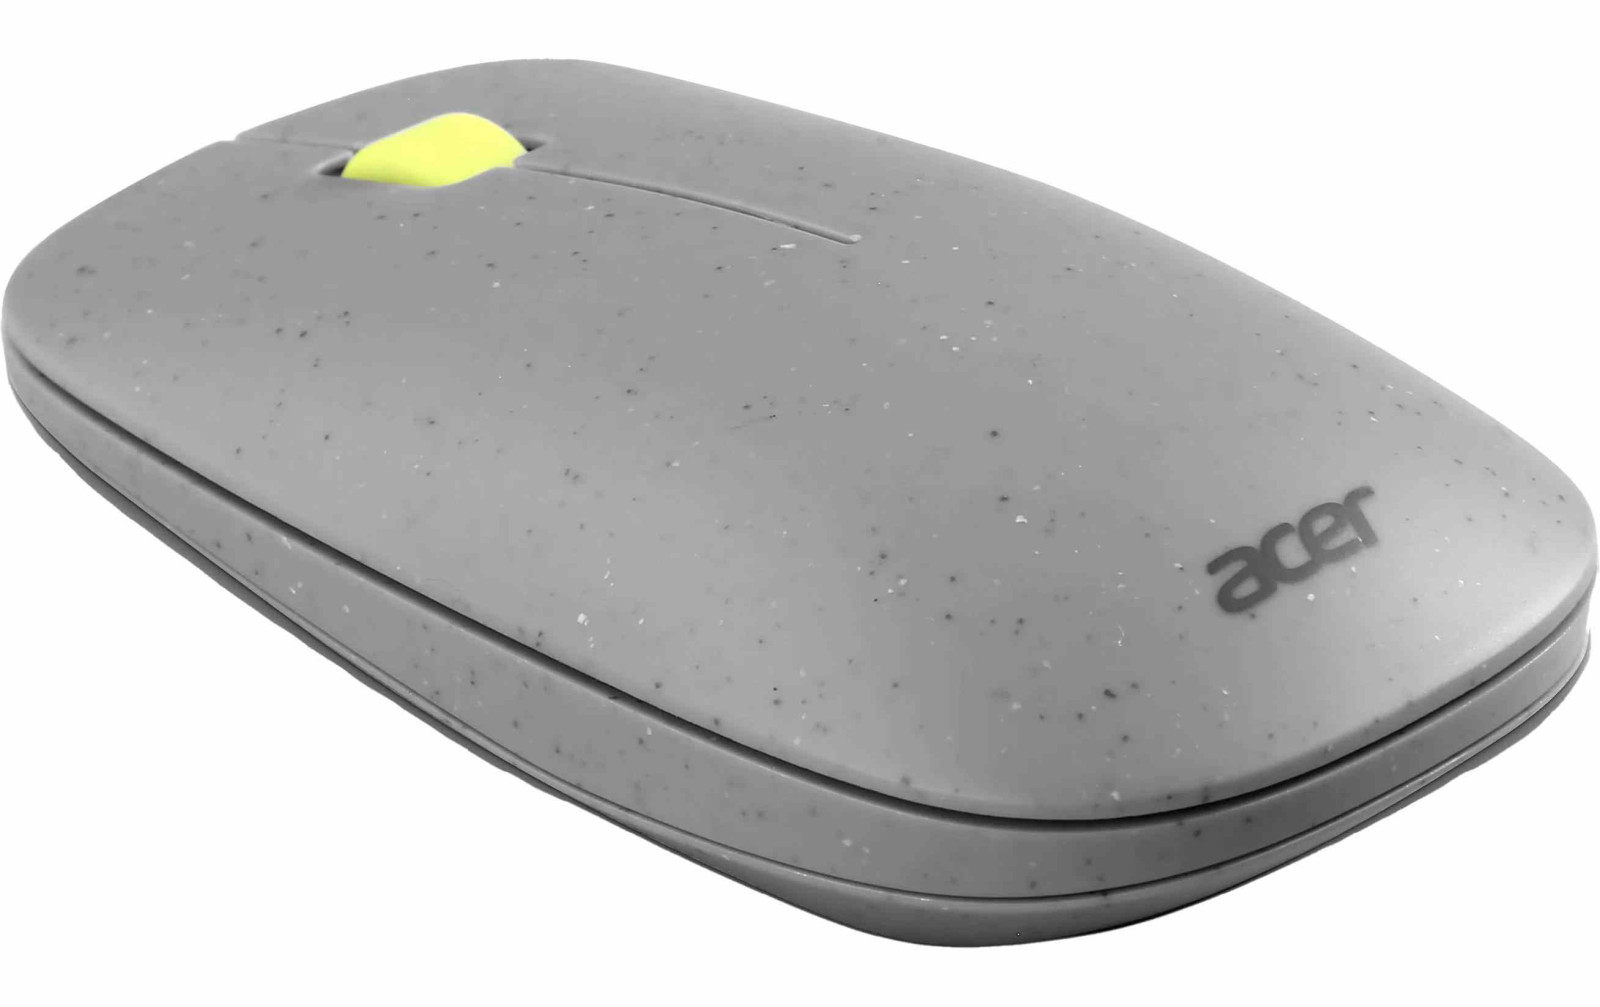 ACER Vero Mouse - Retail pack, bezdrôtová, 2.4GHz, 1200DPI, Šedá